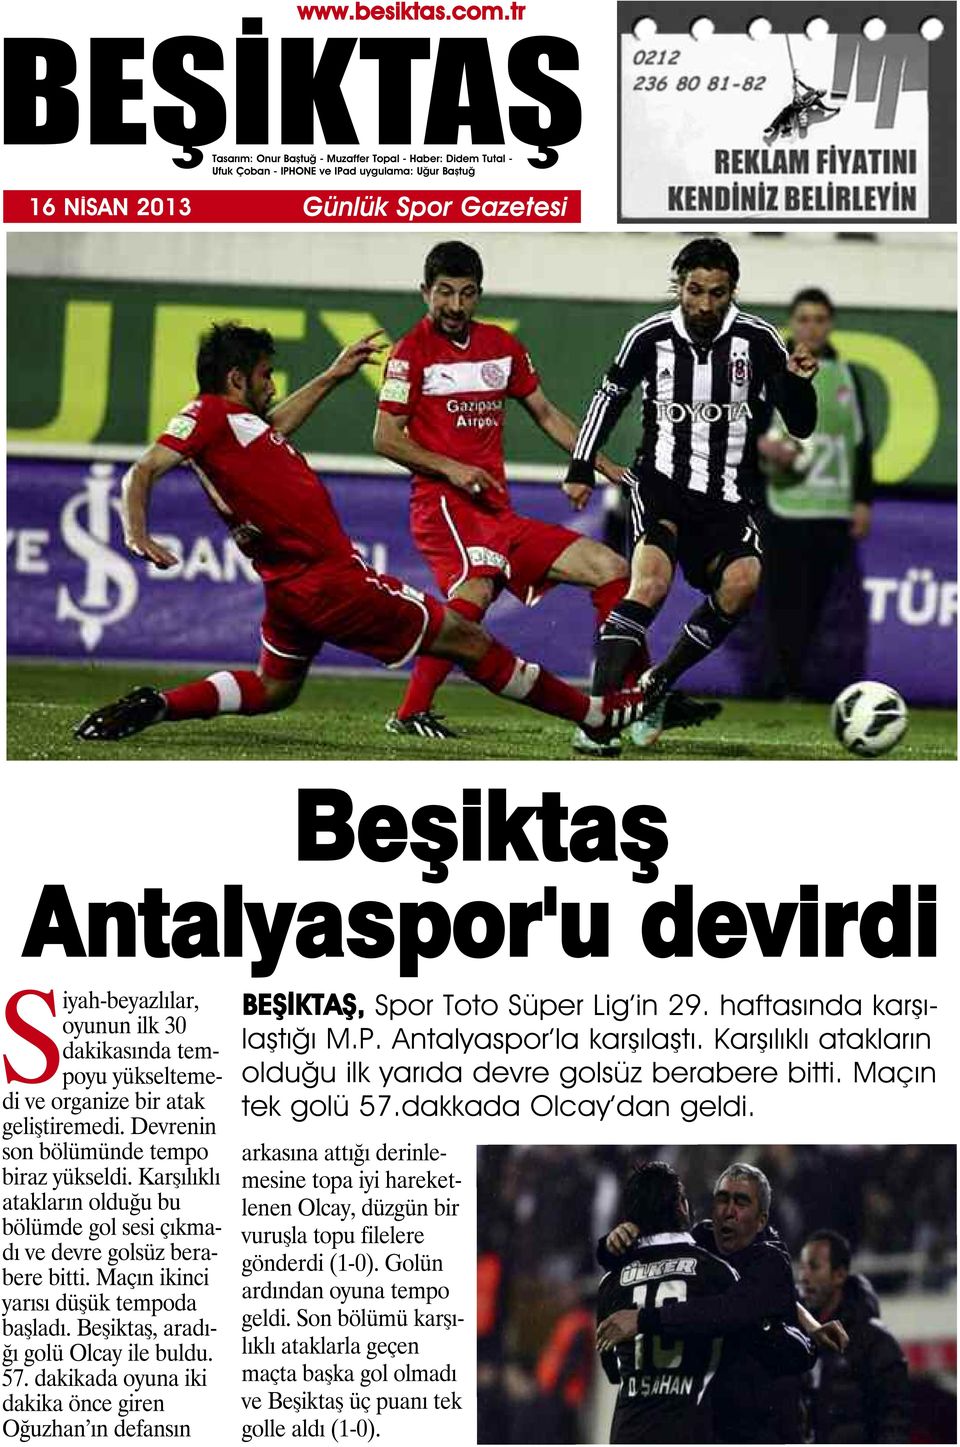 dakikada oyuna iki dakika önce giren Oğuzhan ın defansın, Spor Toto Süper Lig in 29. haftasında karşılaştığı M.P. Antalyaspor la karşılaştı.